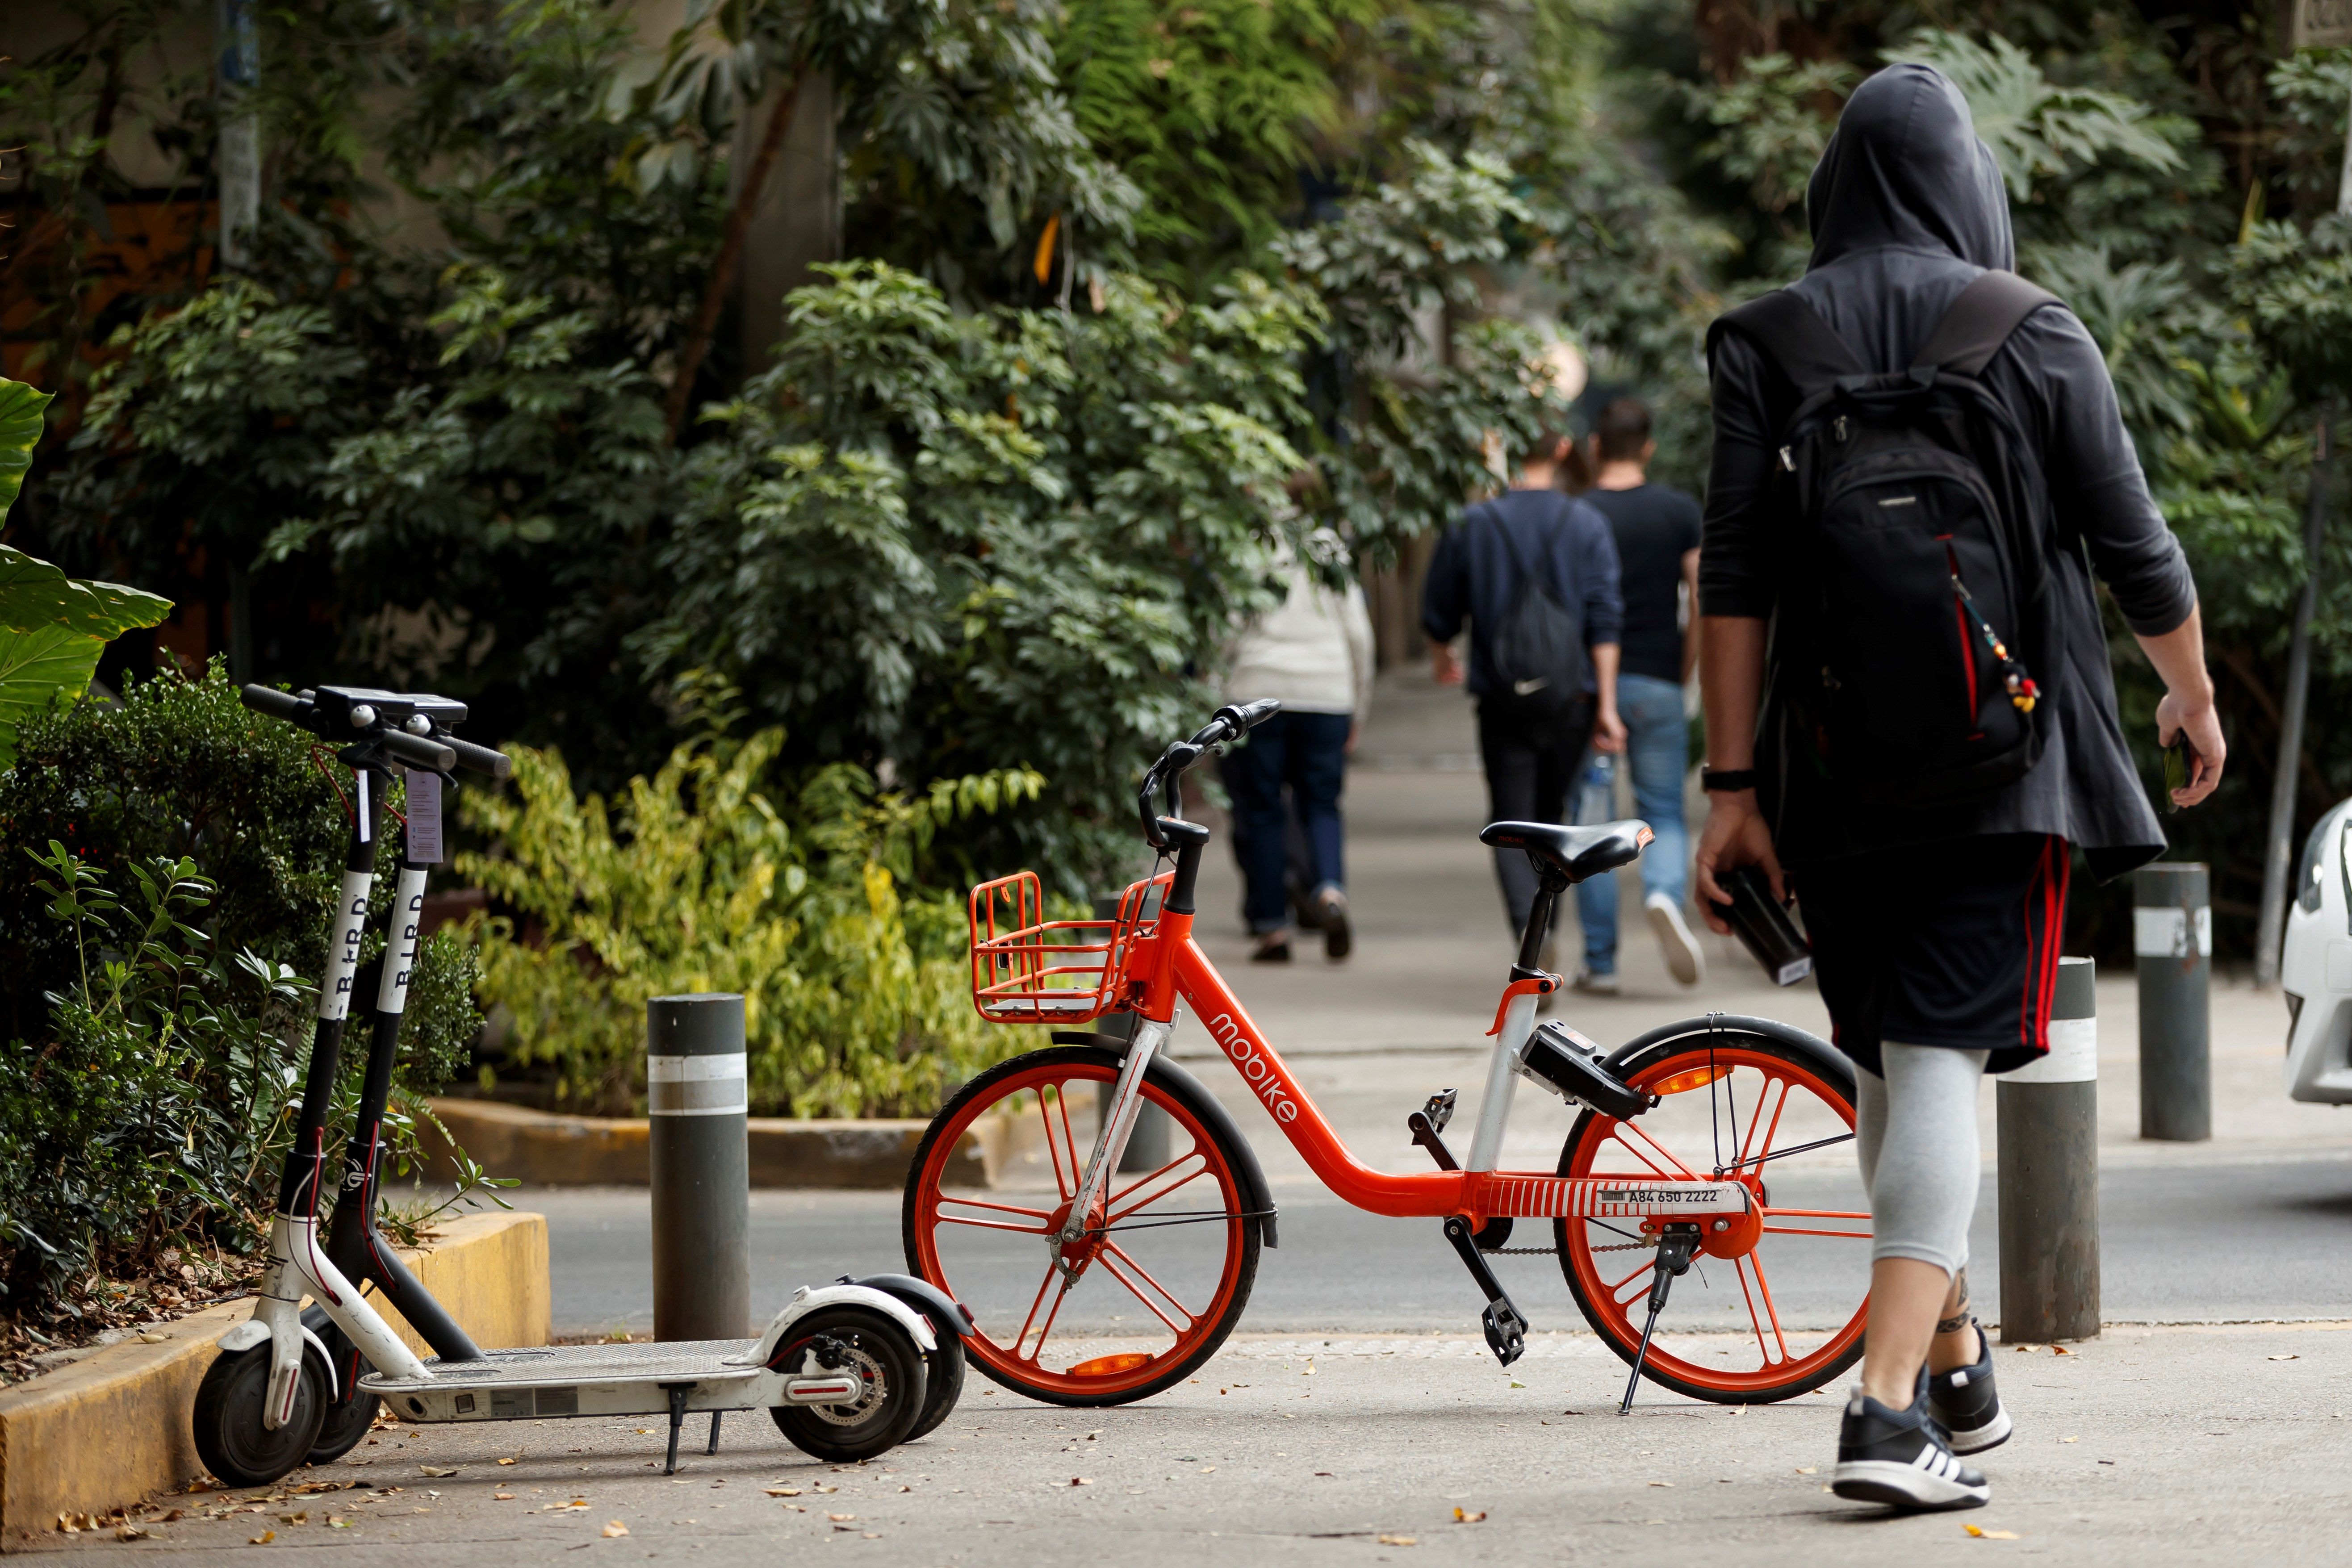  Bicis y patines eléctricos vandalizados, síntomas de una “guerra” por el espacio público